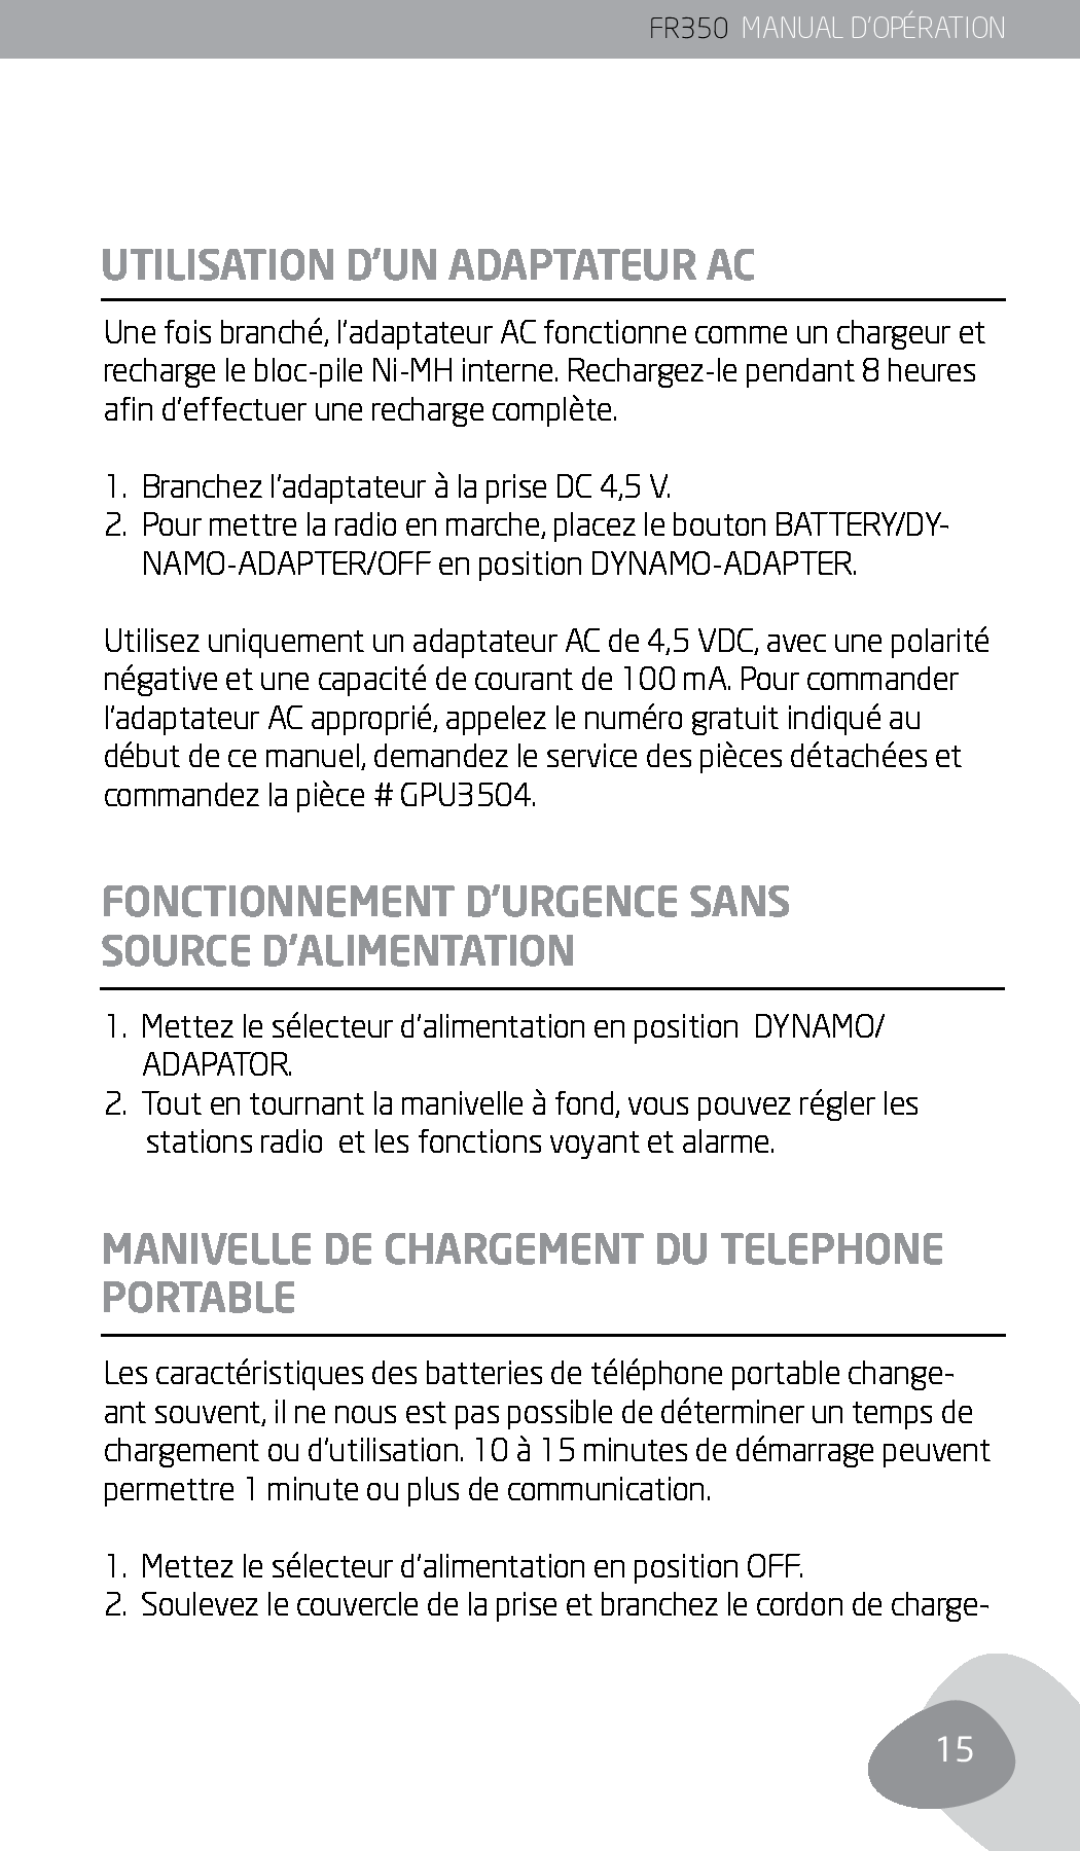 Eton FR350 owner manual Utilisation D’Un Adaptateur Ac, Manivelle De Chargement Du Telephone Portable 